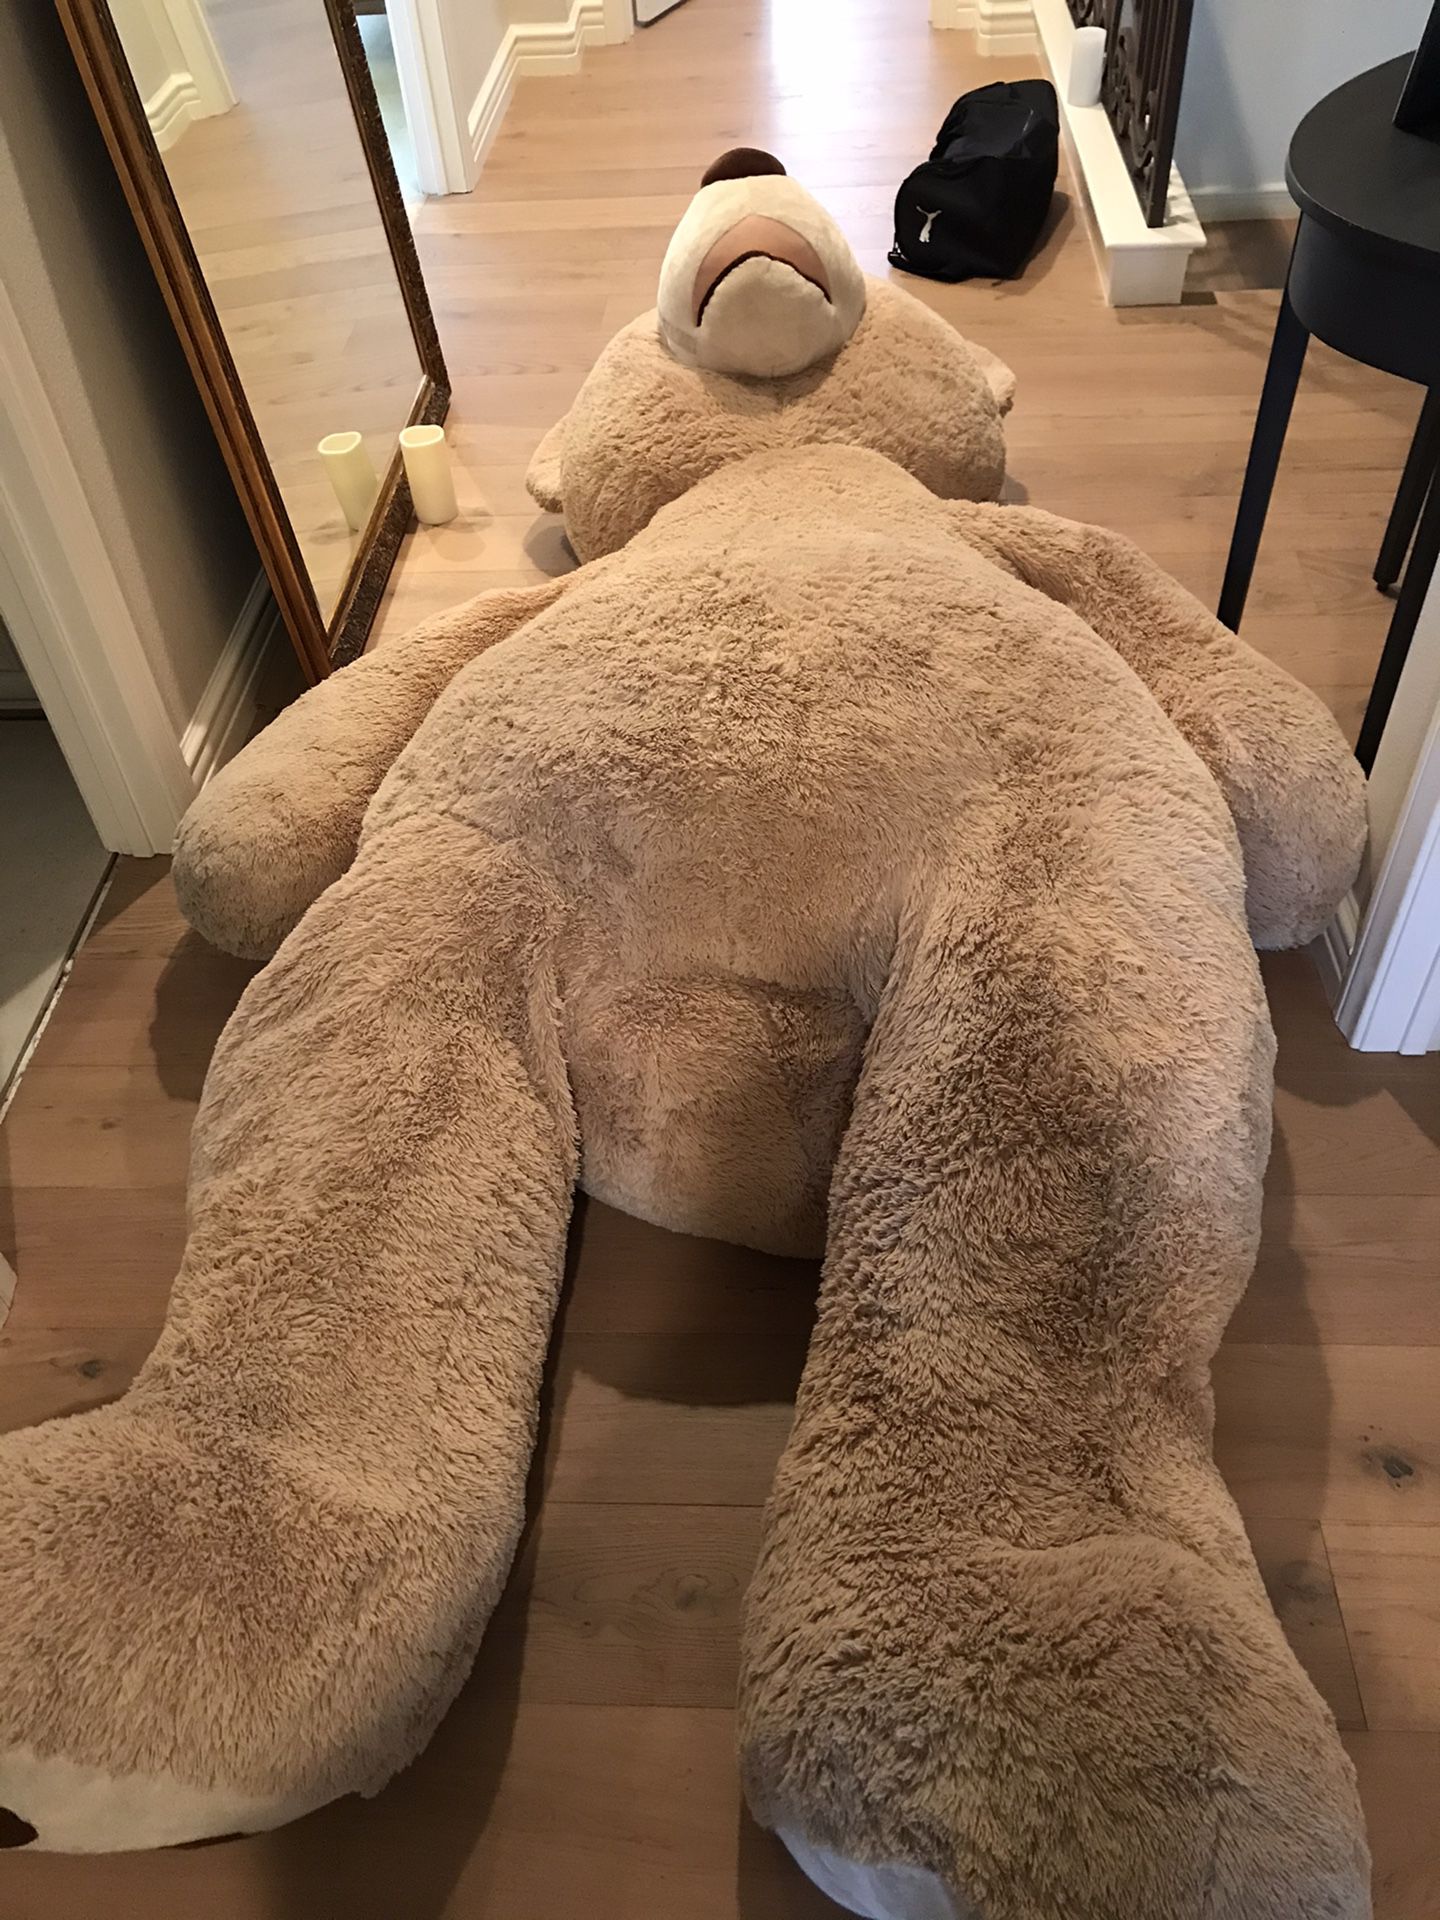 HugFun Giant Teddy Bear 93in from Costco